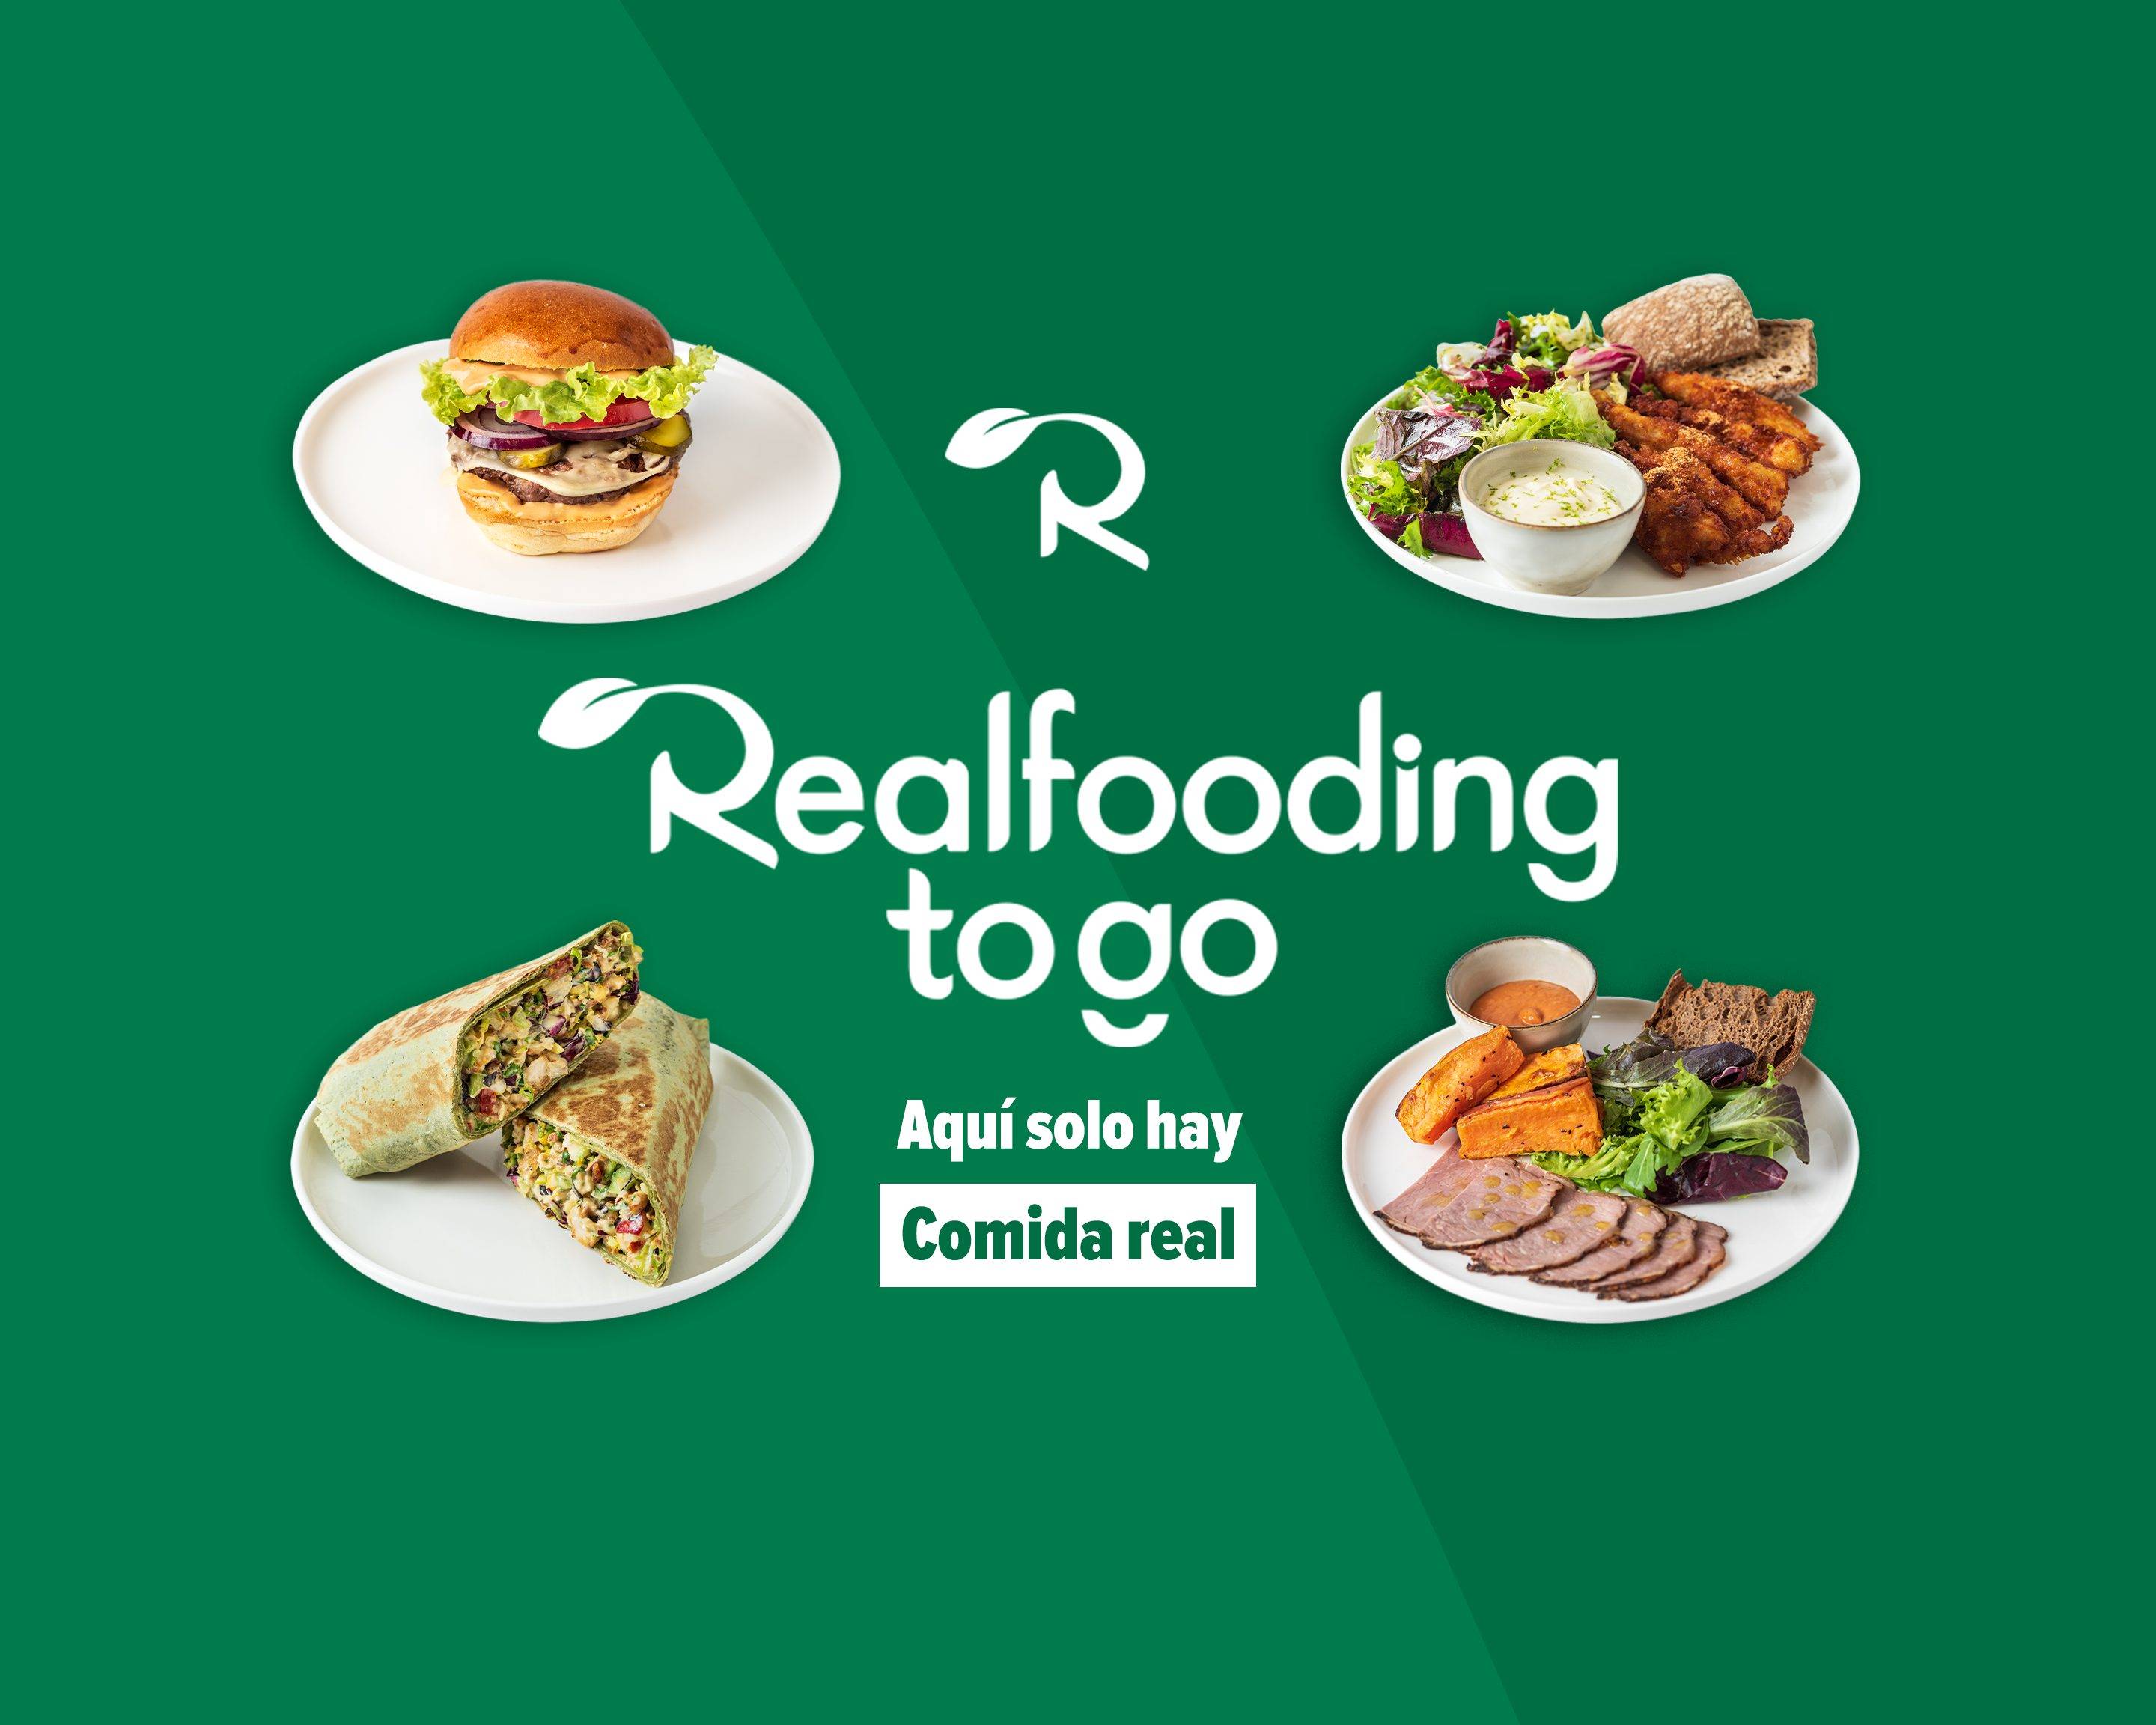 Real Fooding To Go - Jose Calvo Menú a Domicilio【Menú y Precios】Madrid